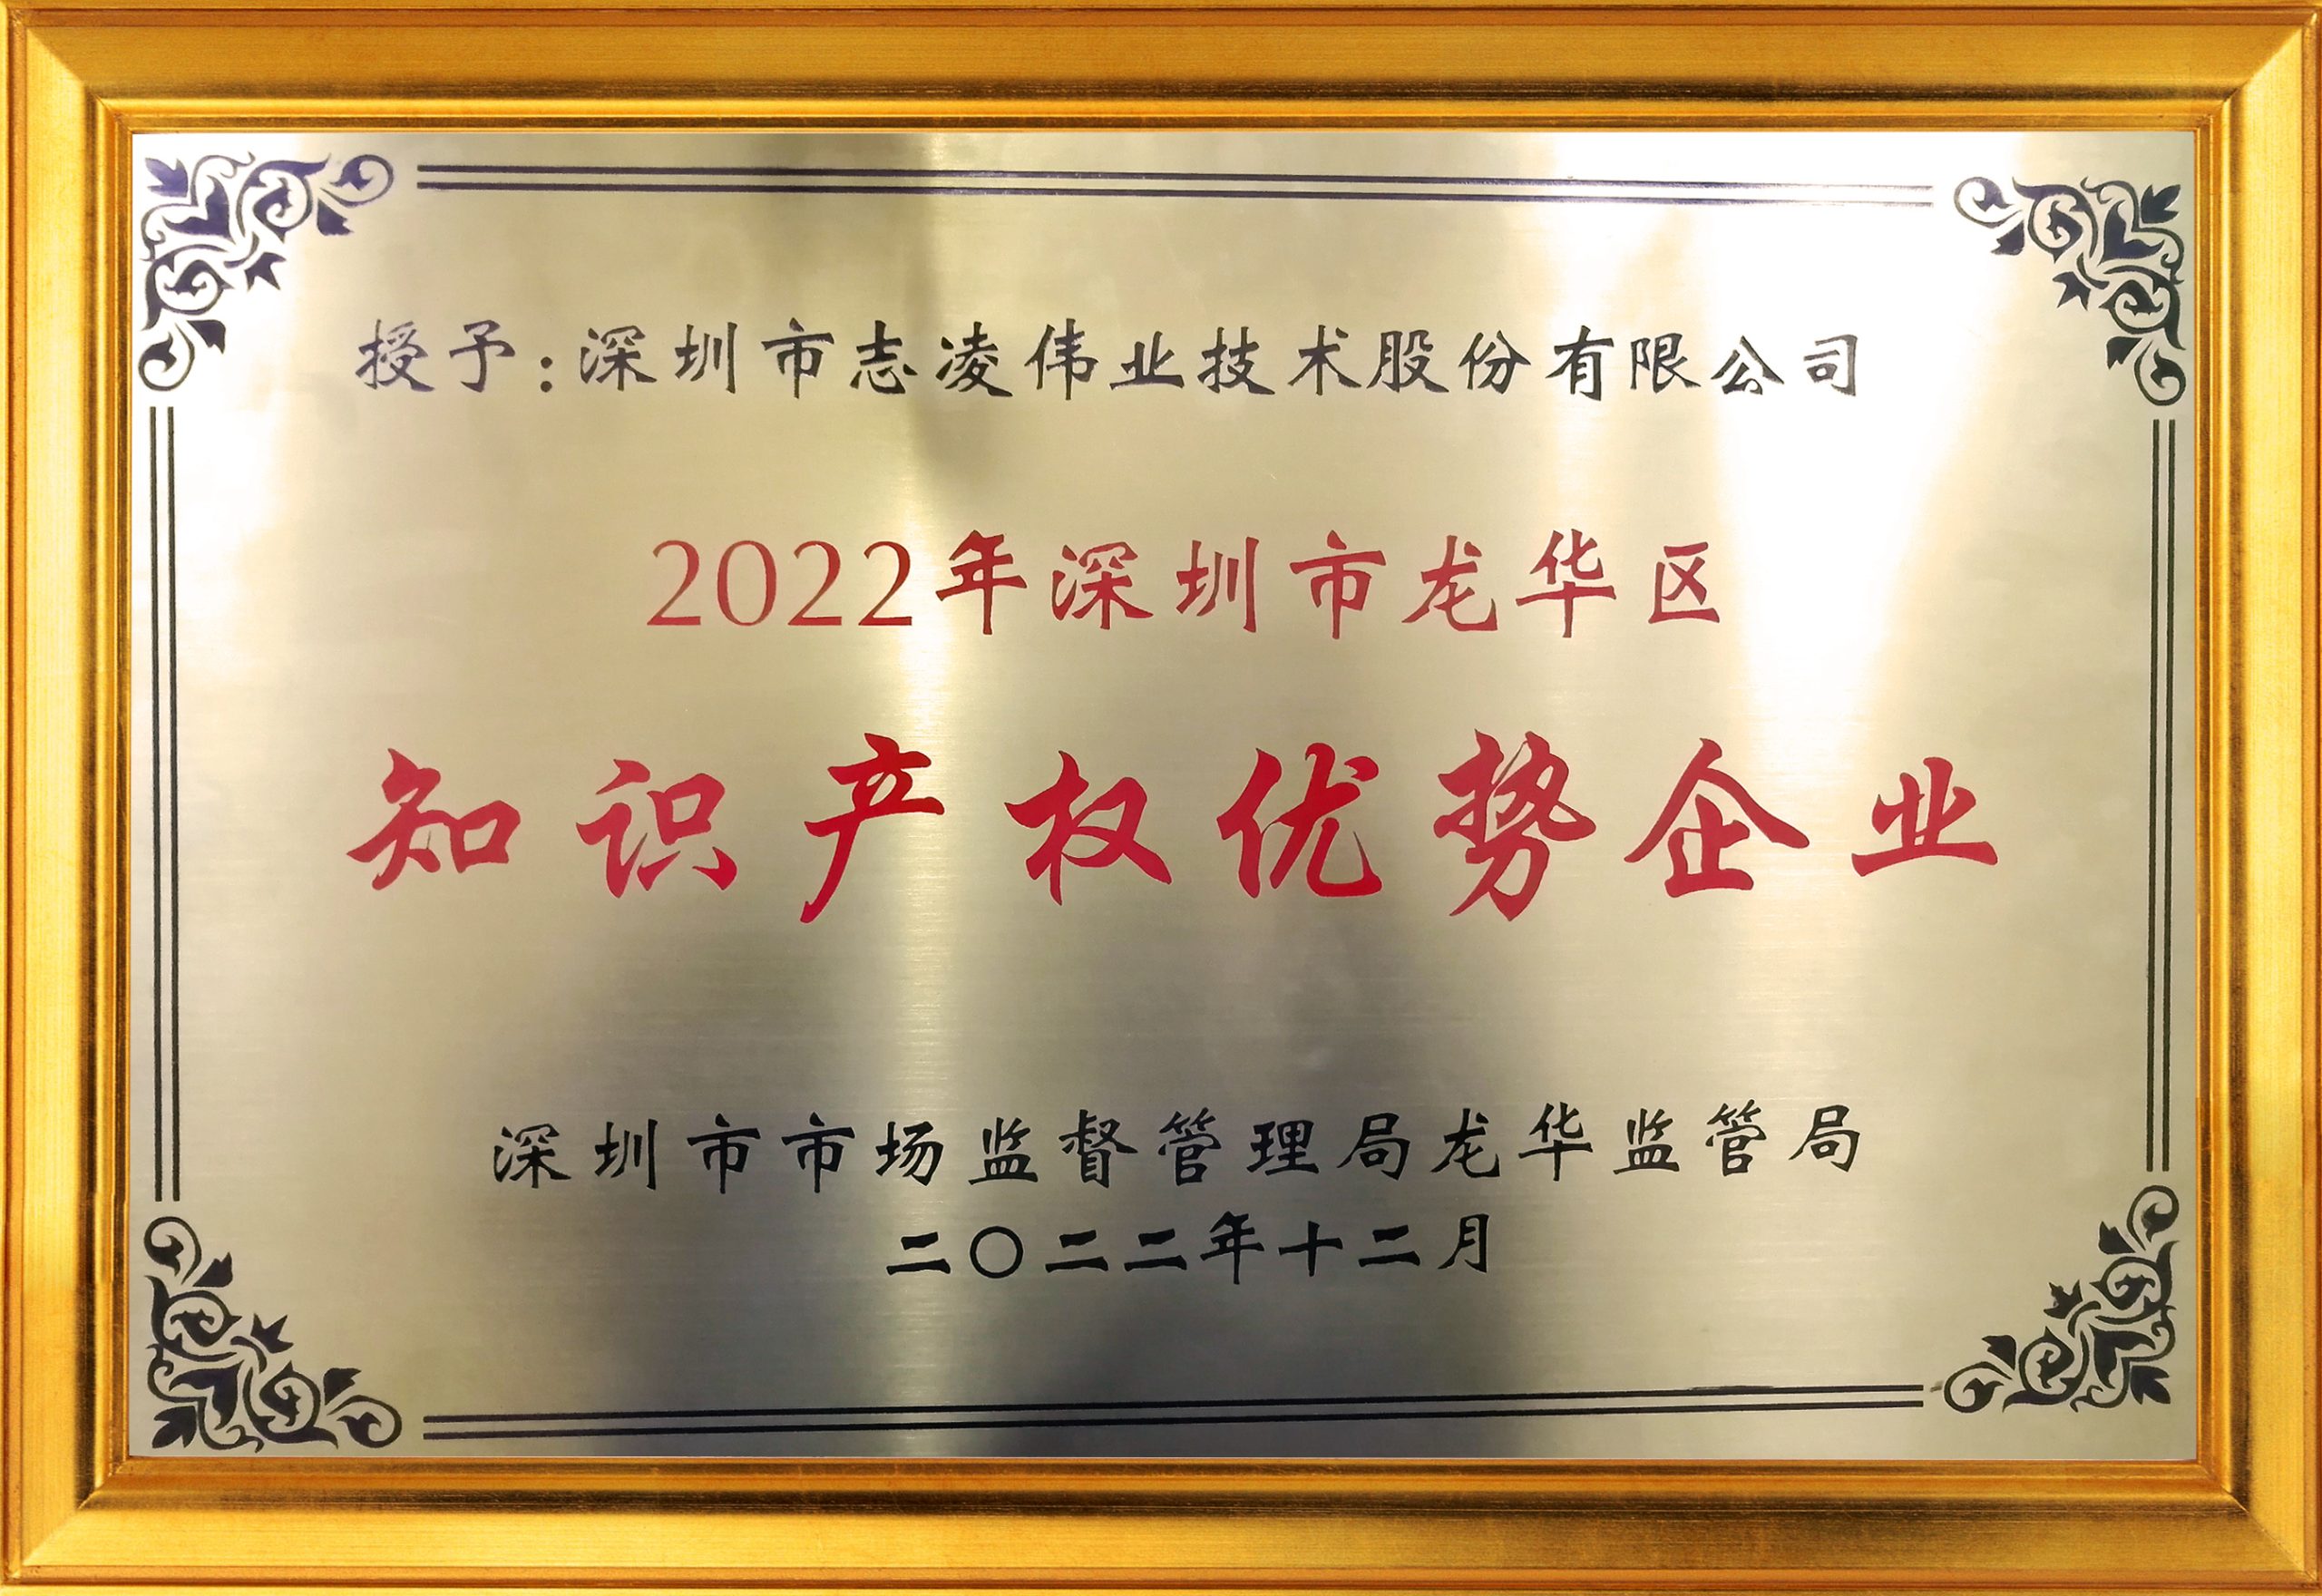 2022 Shenzhen Longhua District Intellectual Property Advantage Enterprise